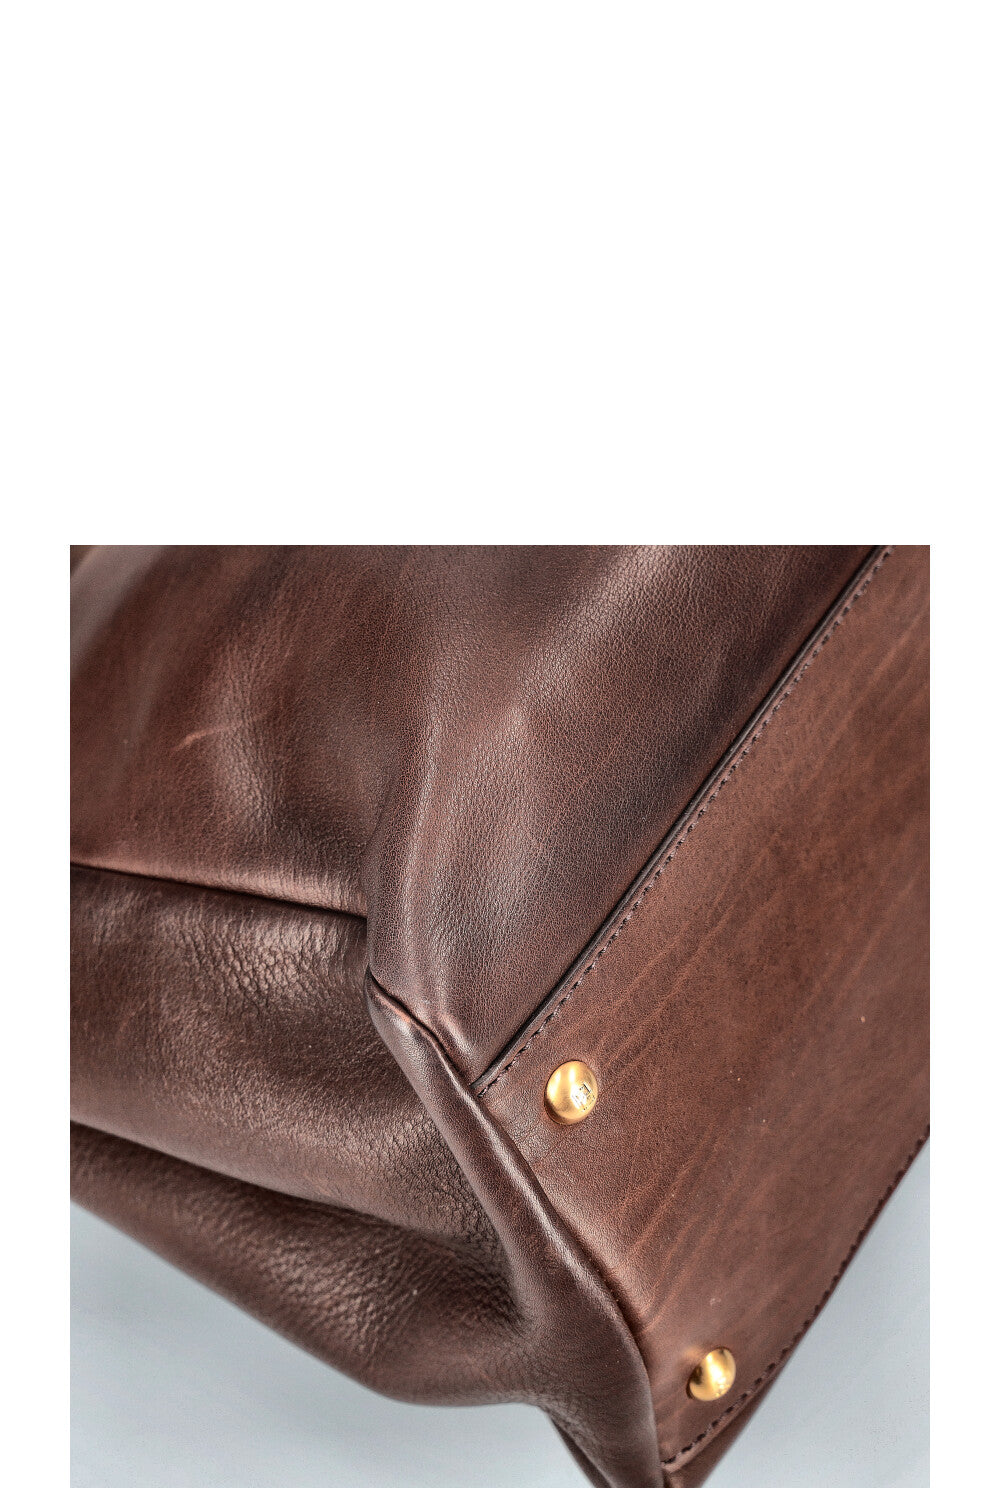 FENDI Peekaboo Large Brown Leather